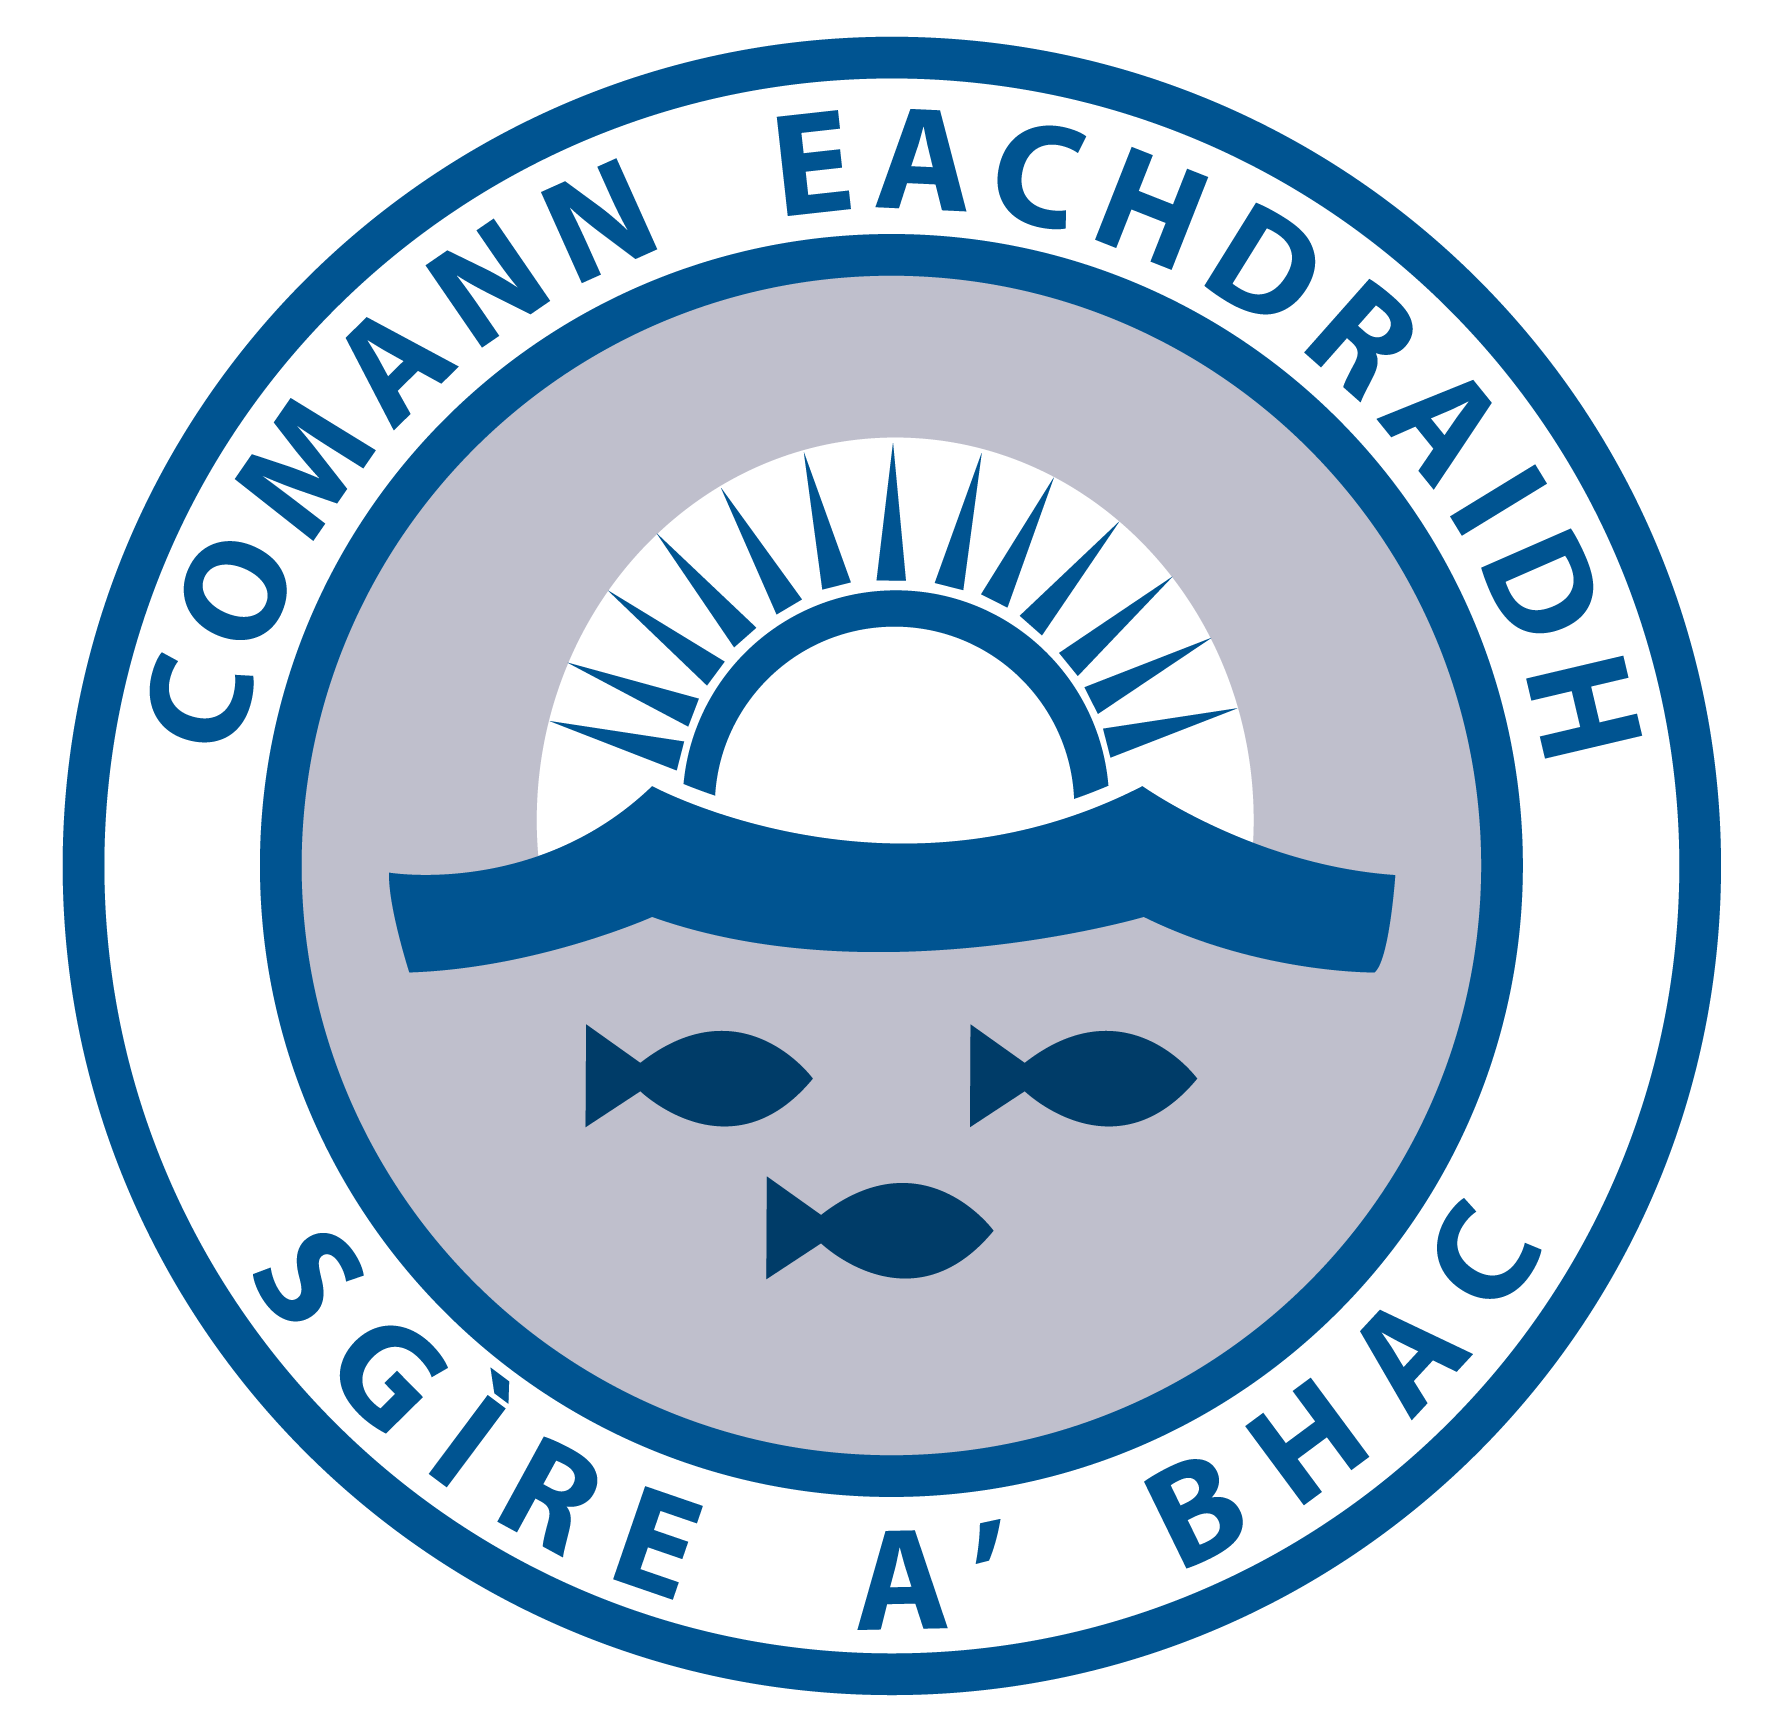 CEBac logo